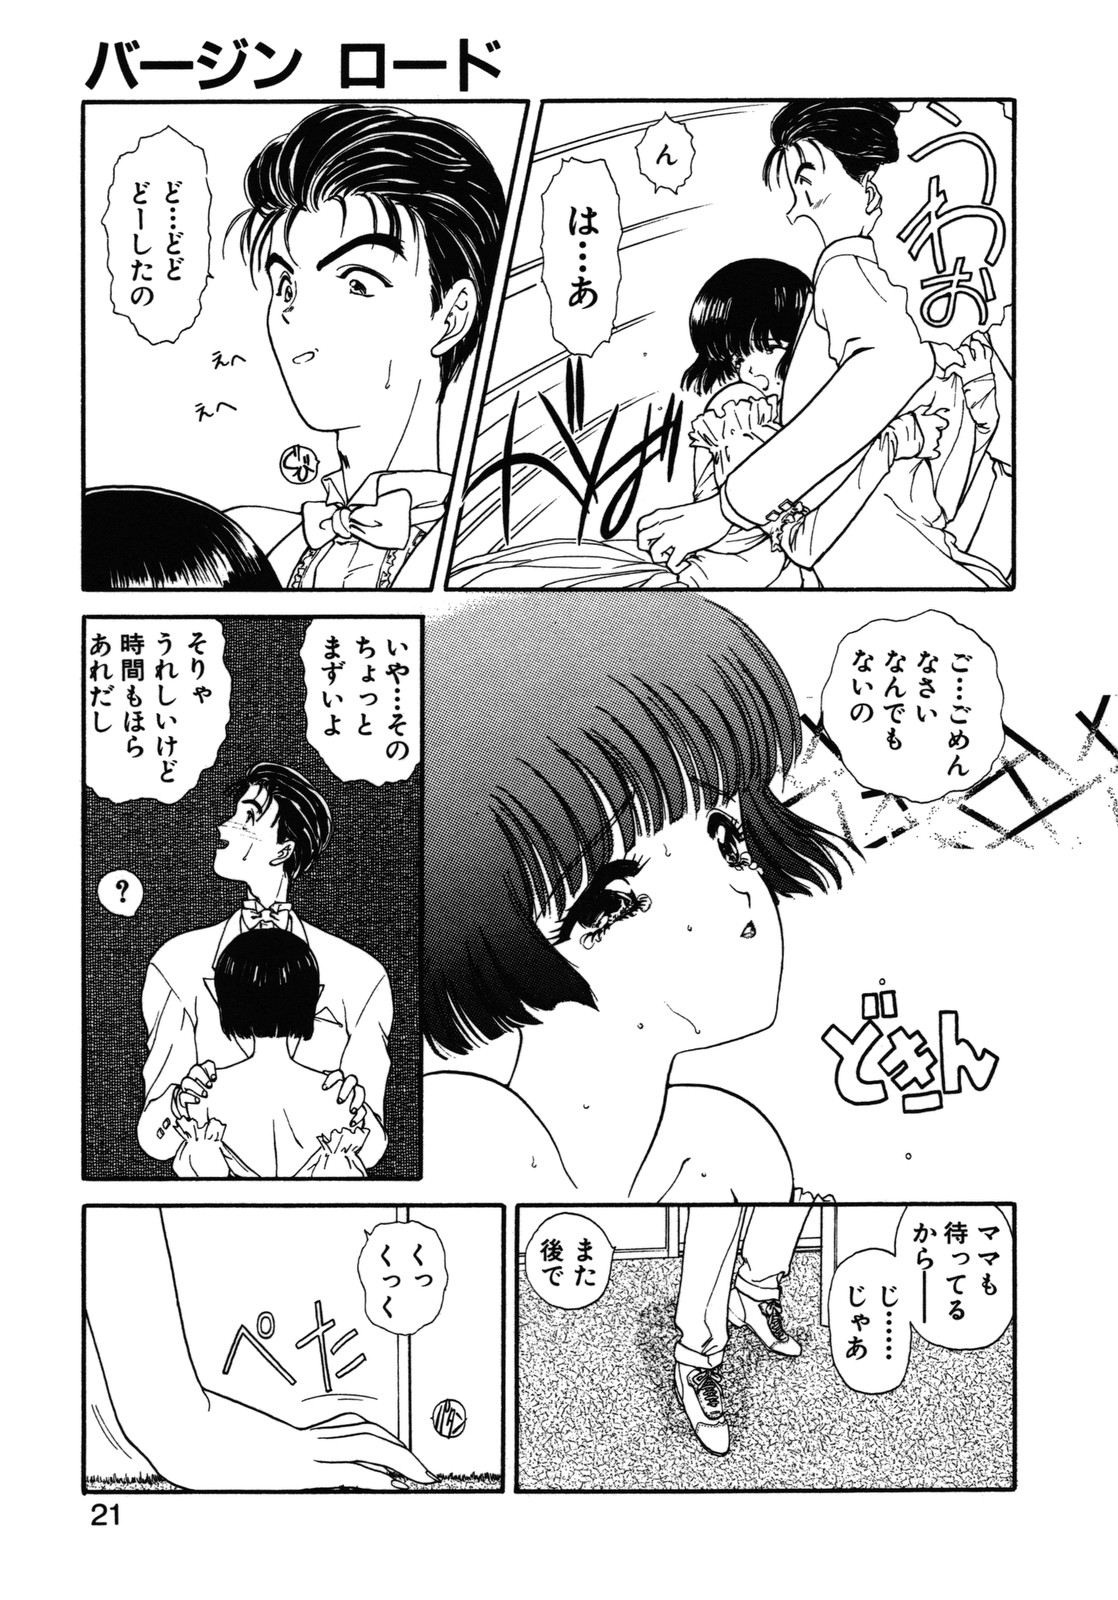 [Utatane Hiroyuki] COUNT DOWN page 22 full